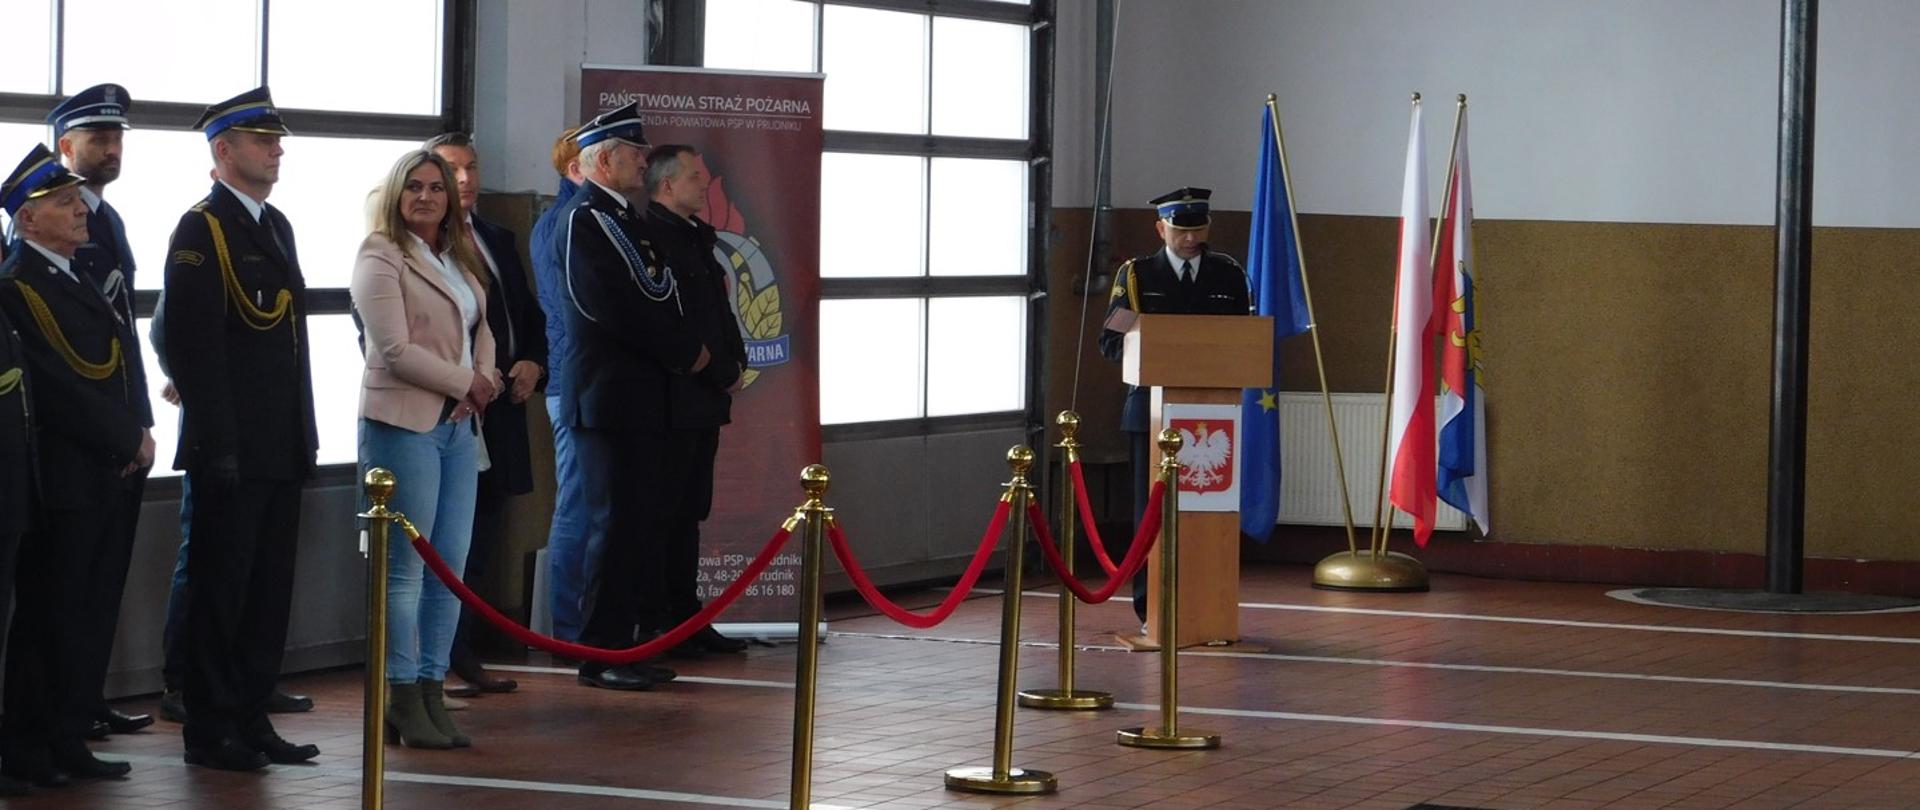 Zdjęcie przedstawia strażaka podczas przemowy przy mównicy na uroczystym apelu z okazji Dnia Strażaka.
Na zdjęciu widoczni z lewej strony zaproszeni goście.